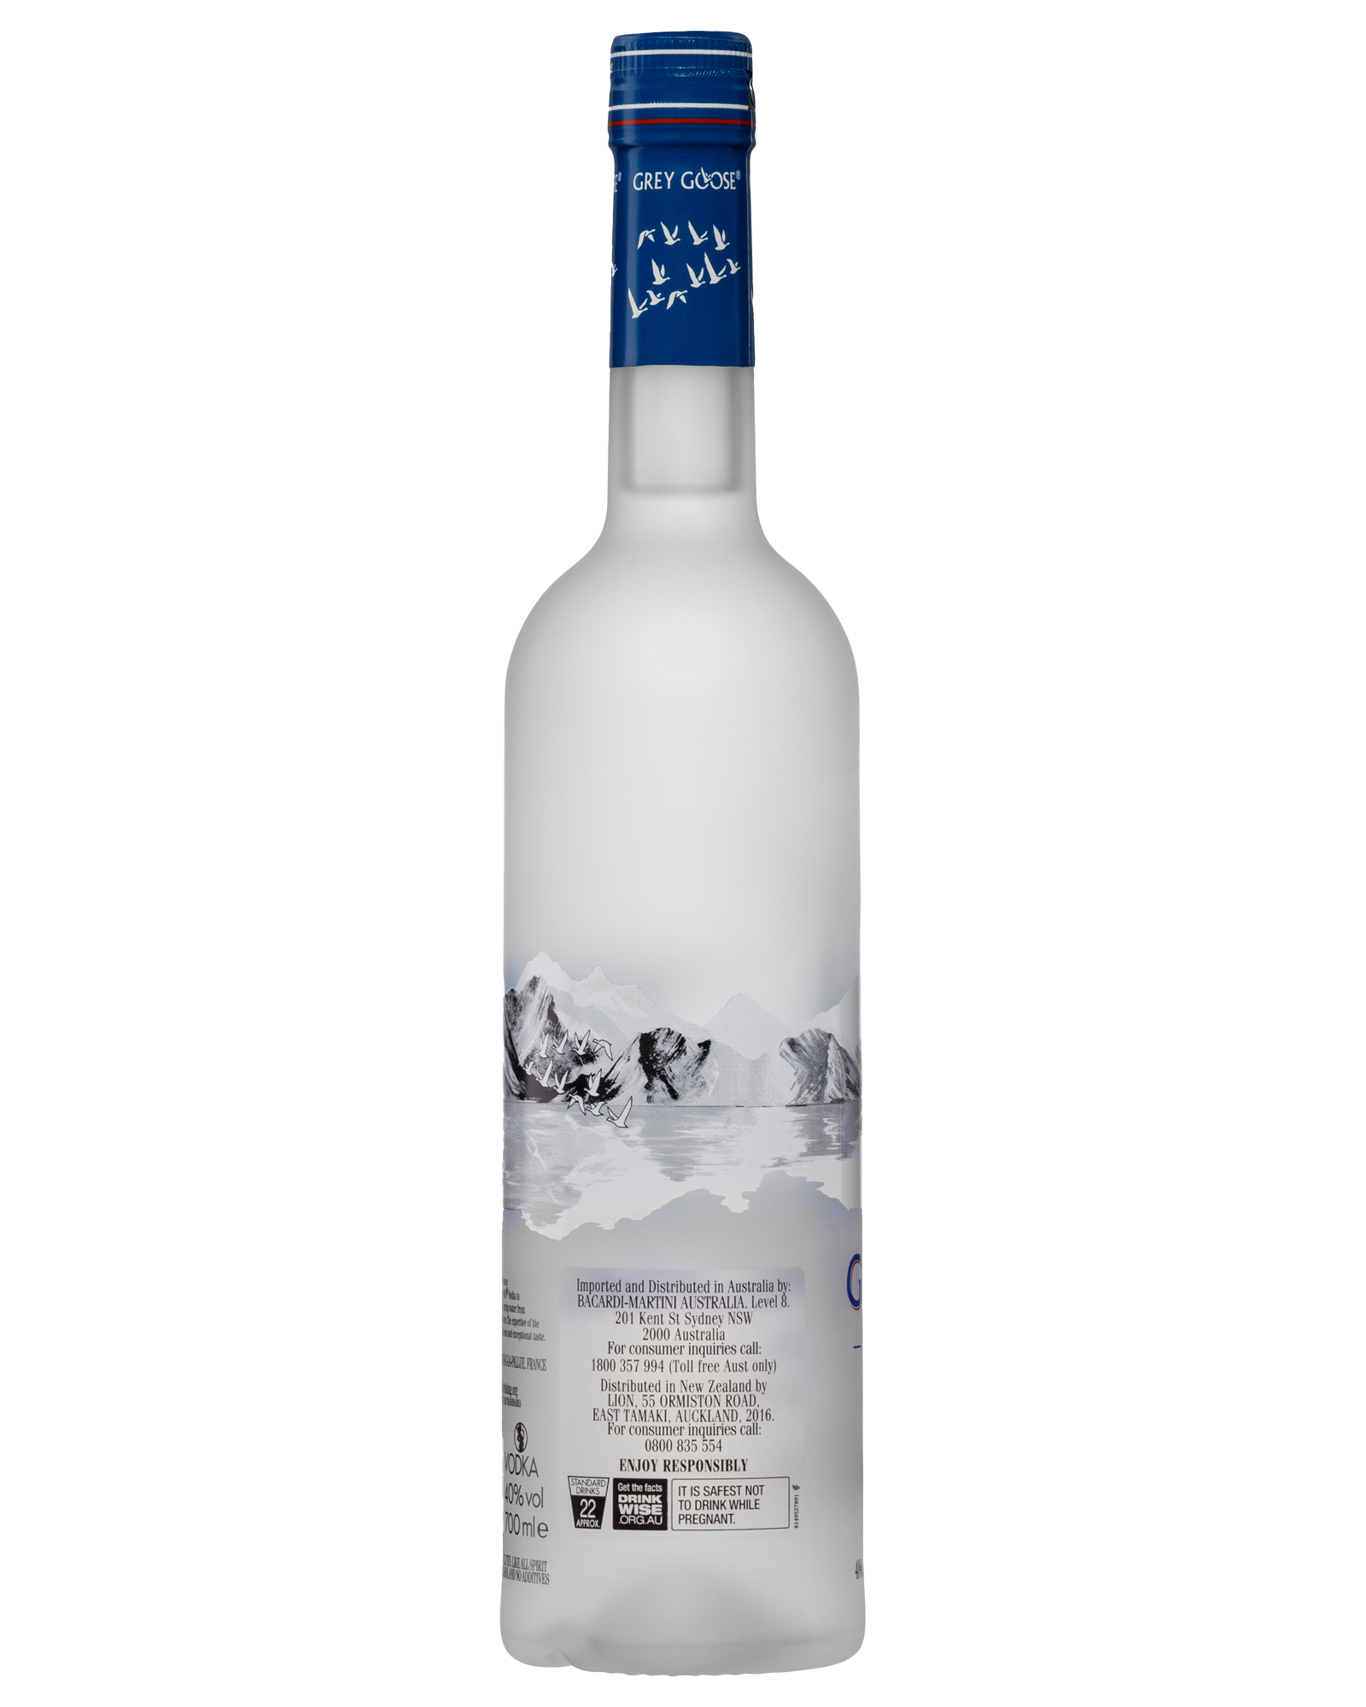 Grey Goose Vodka Background PNG Image